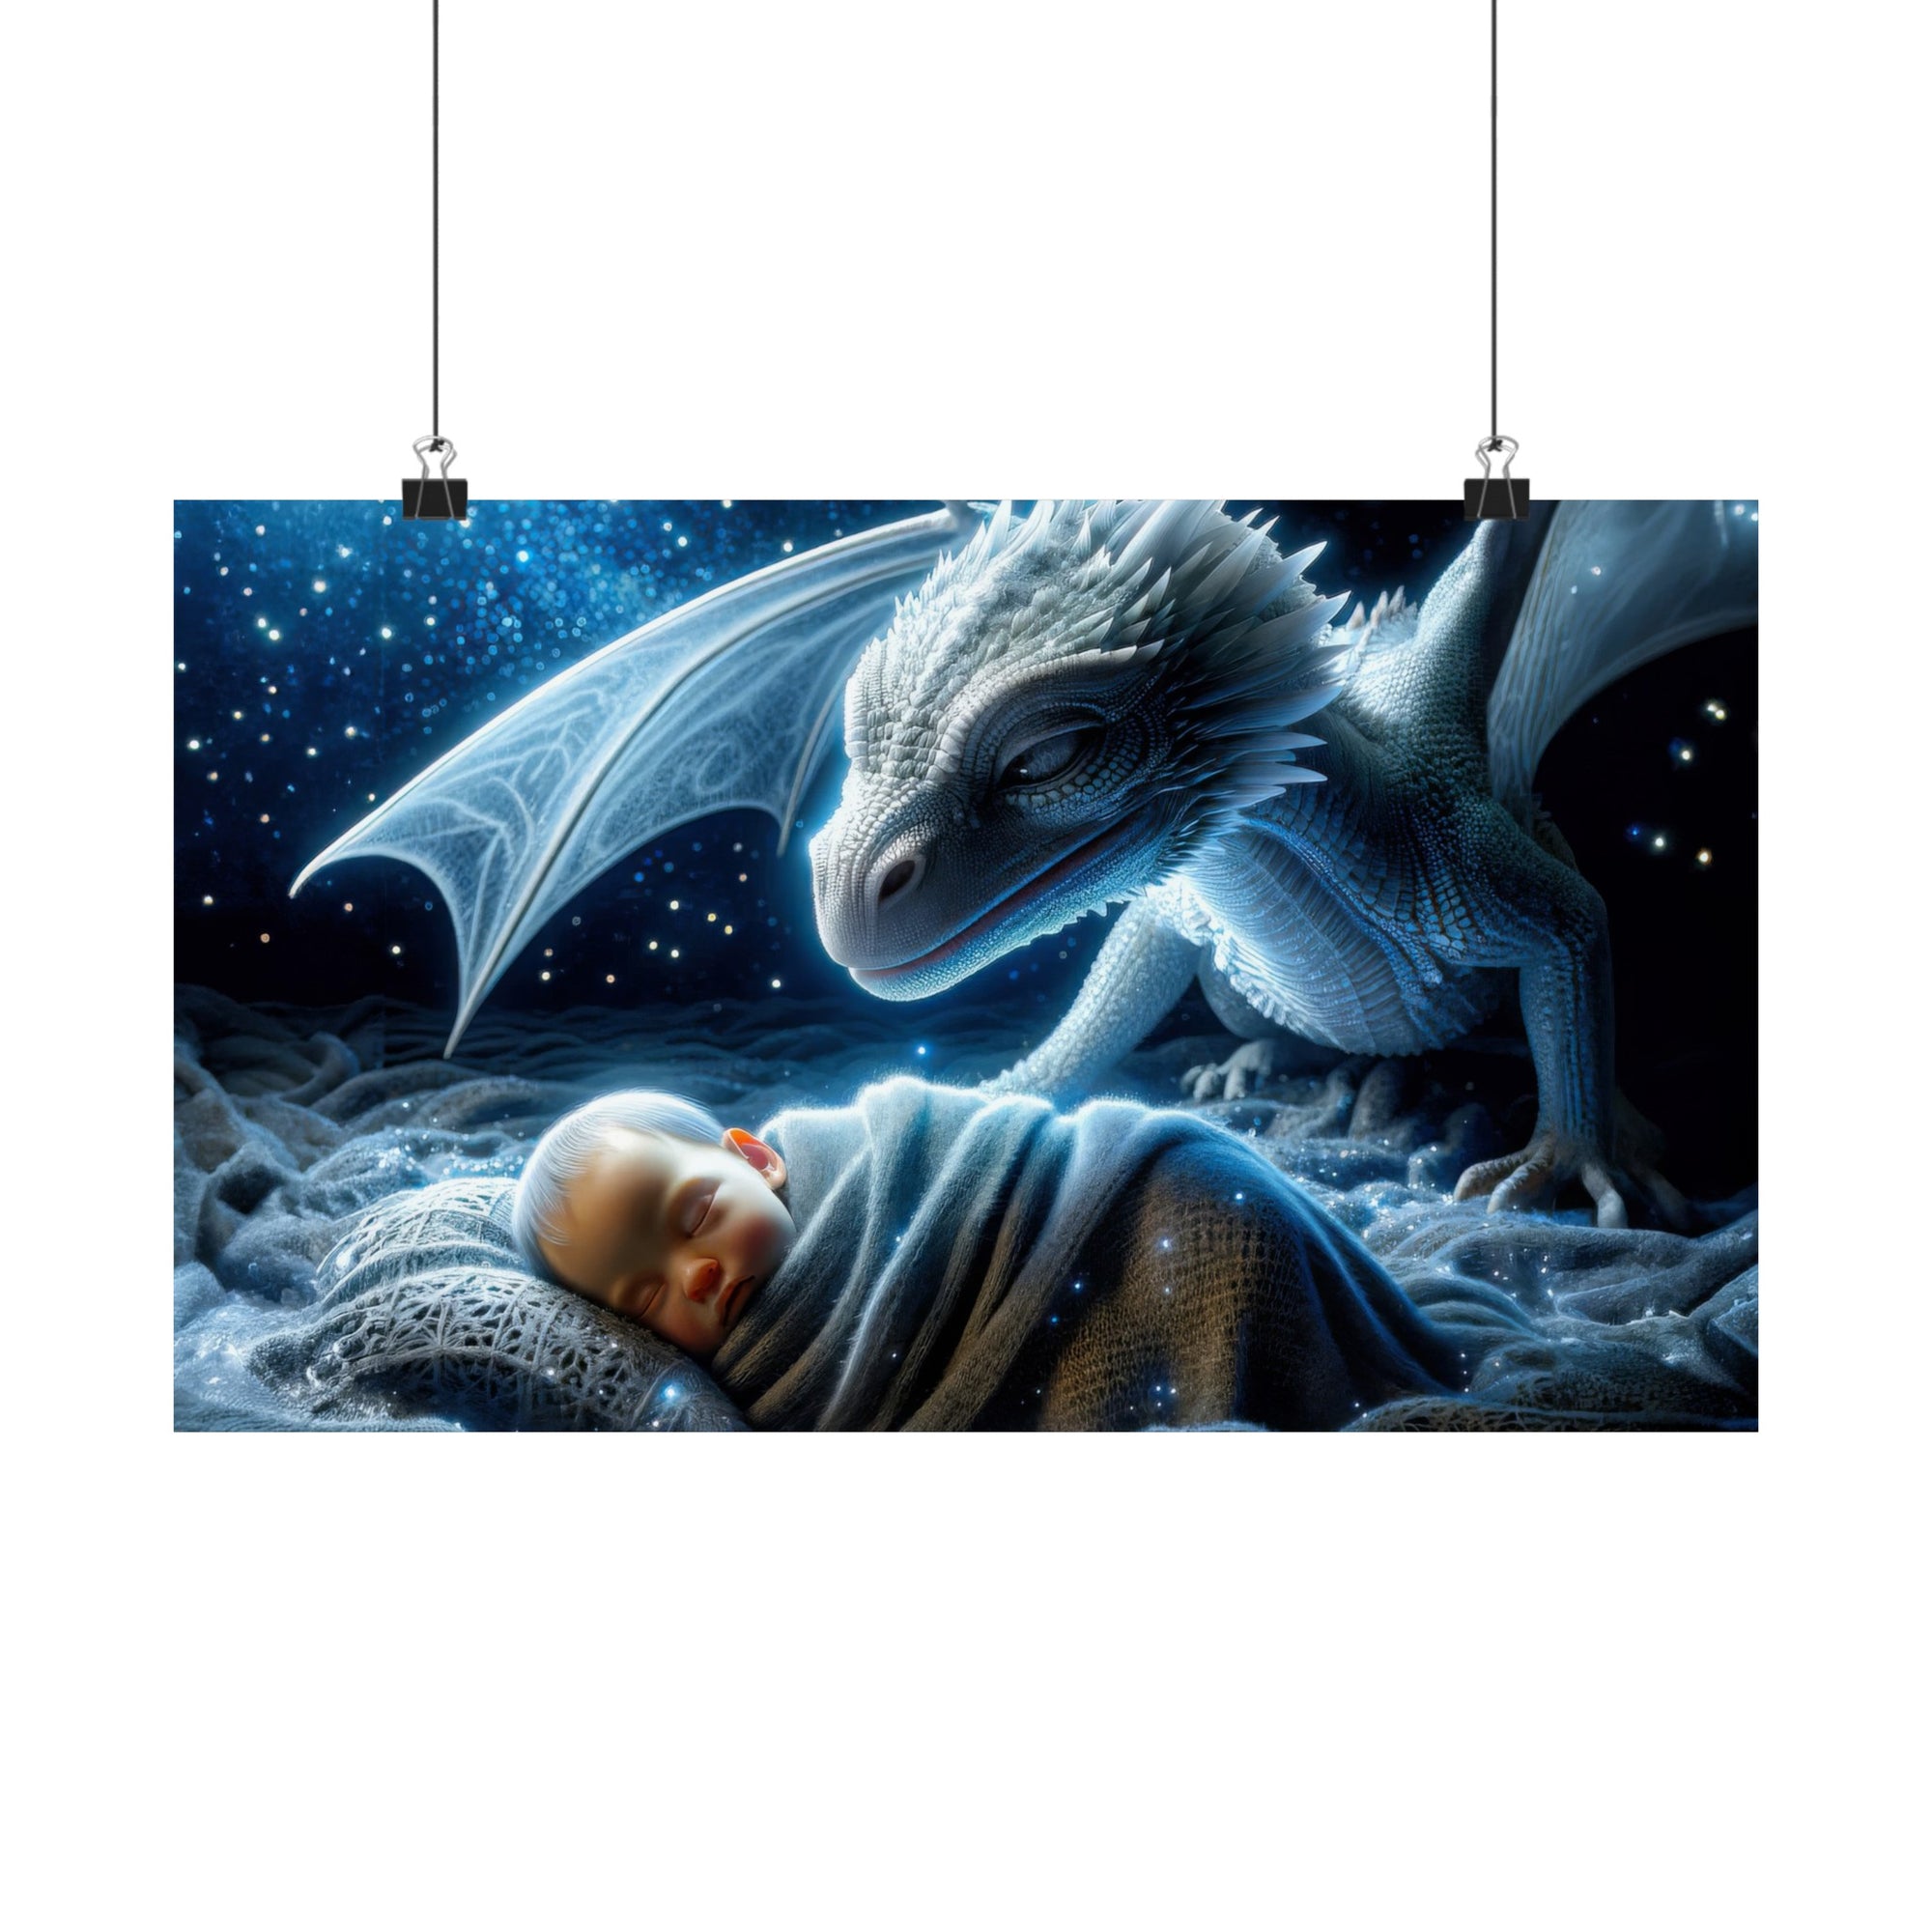 Stardust Lullabies Poster